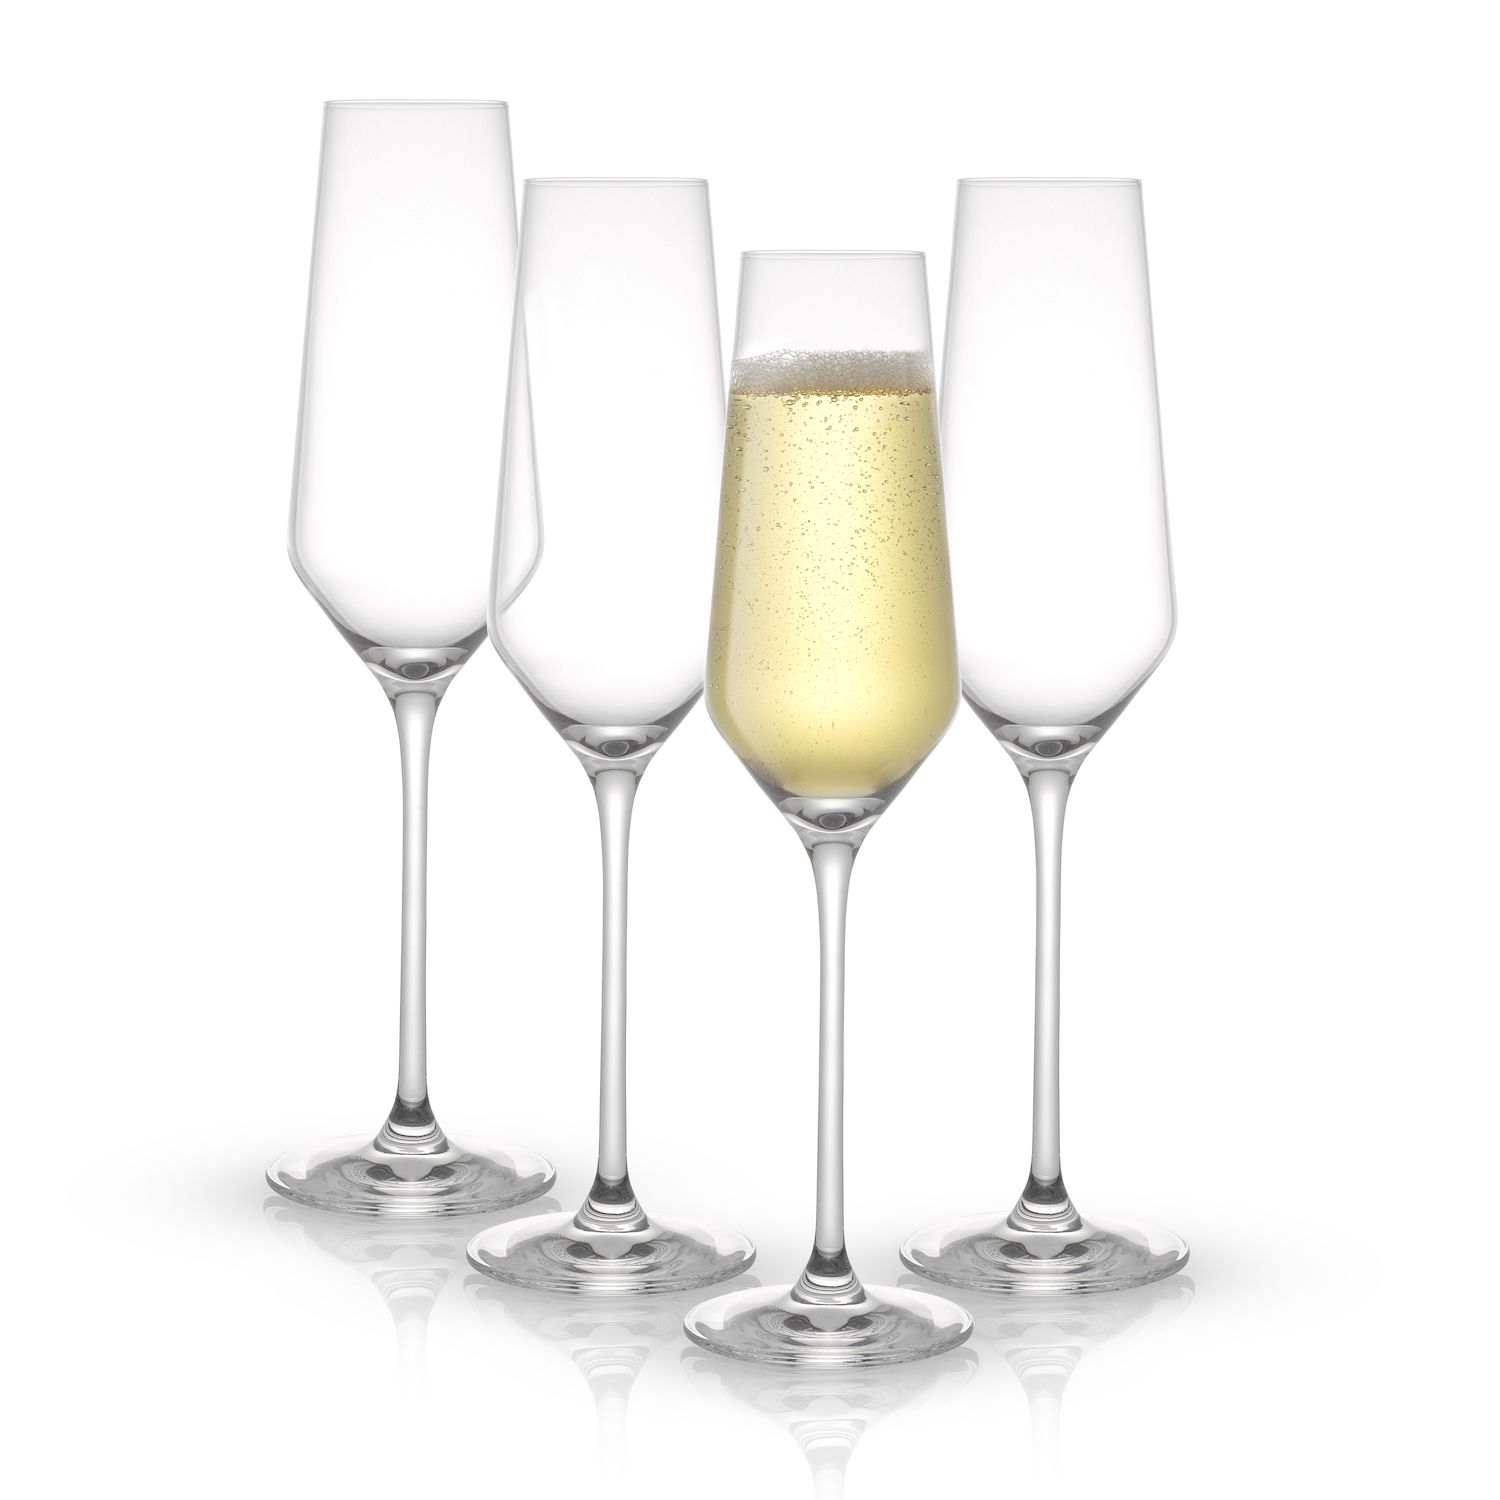 JoyJolt Elle Fluted Cylinder White Wine Glasses - Set of 2